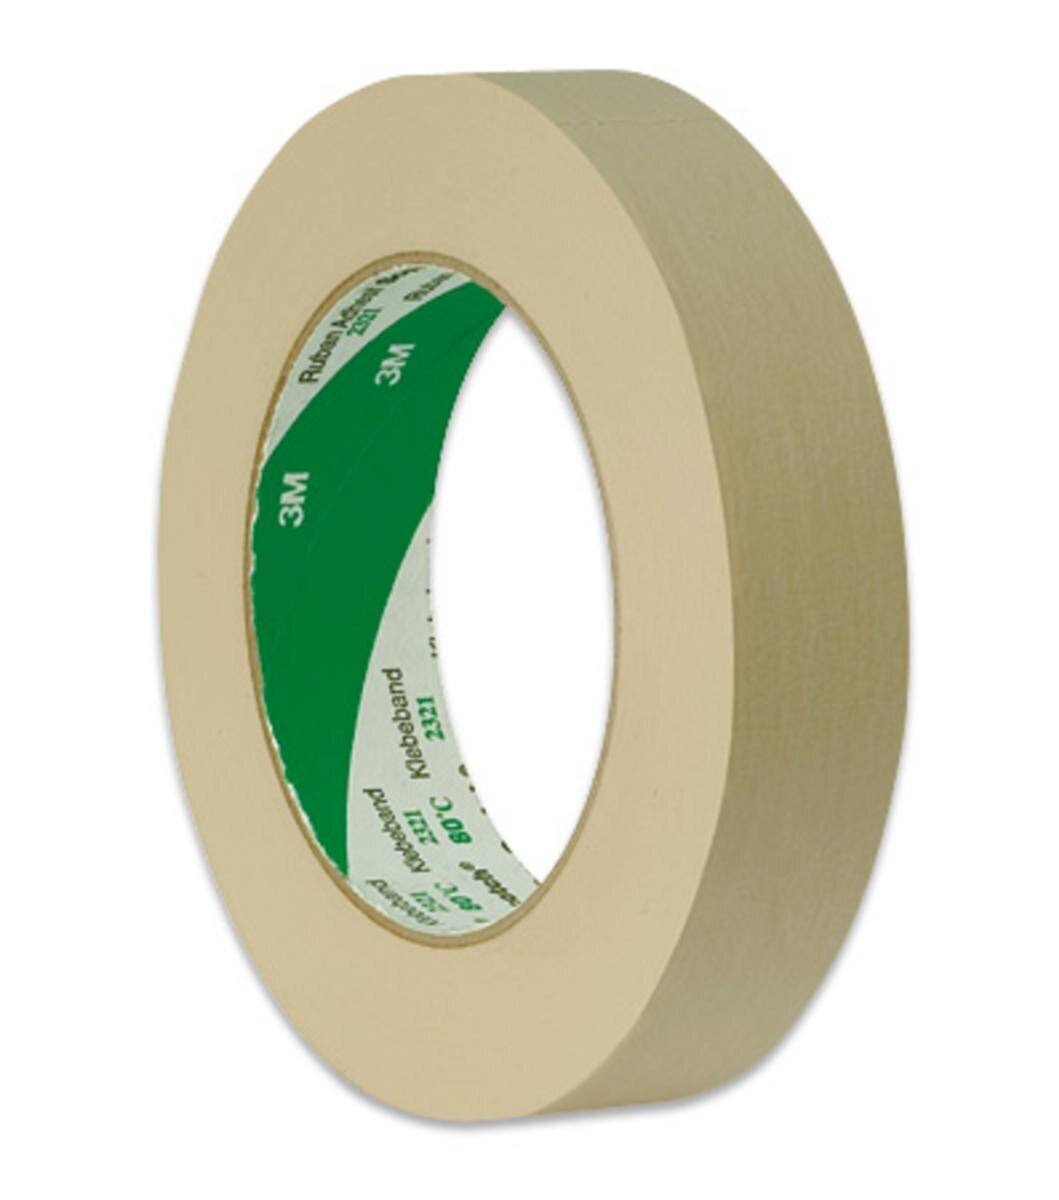 3M Scotch crepe tape 2321, natural colors, 18 mm x 50 m, 0.135 mm